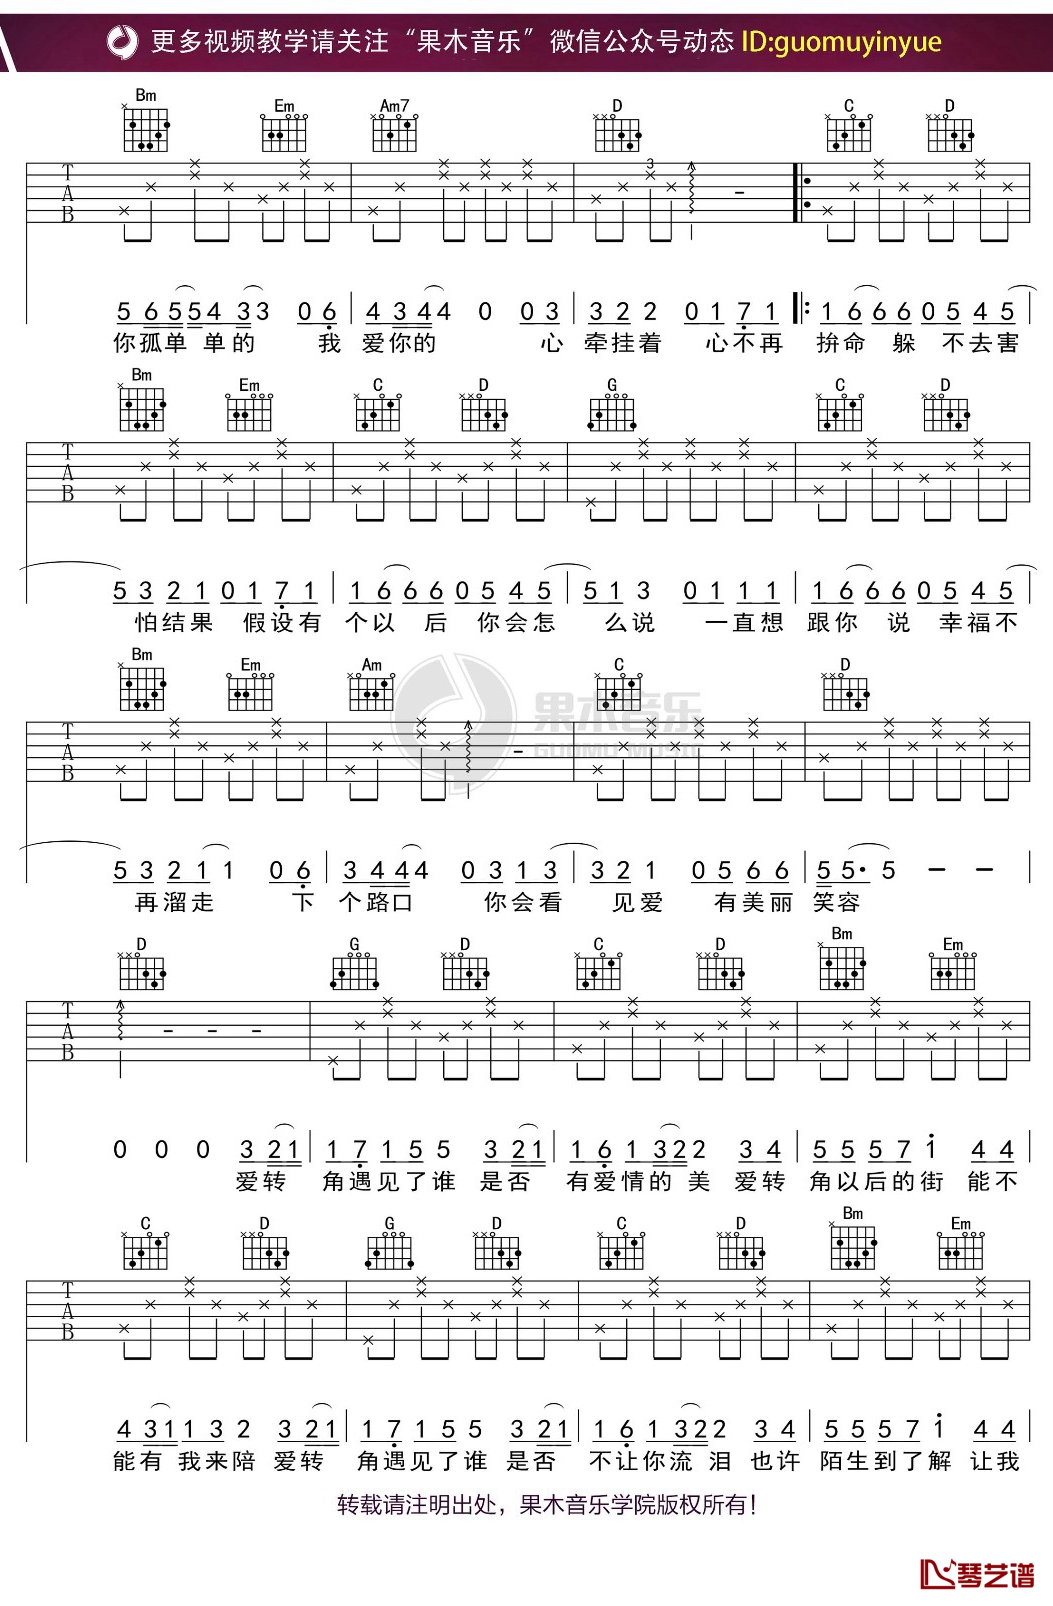 吉他弹唱流行歌曲《爱转角》G大调/四四拍/分解和弦-指弹吉他谱 - 乐器学习网